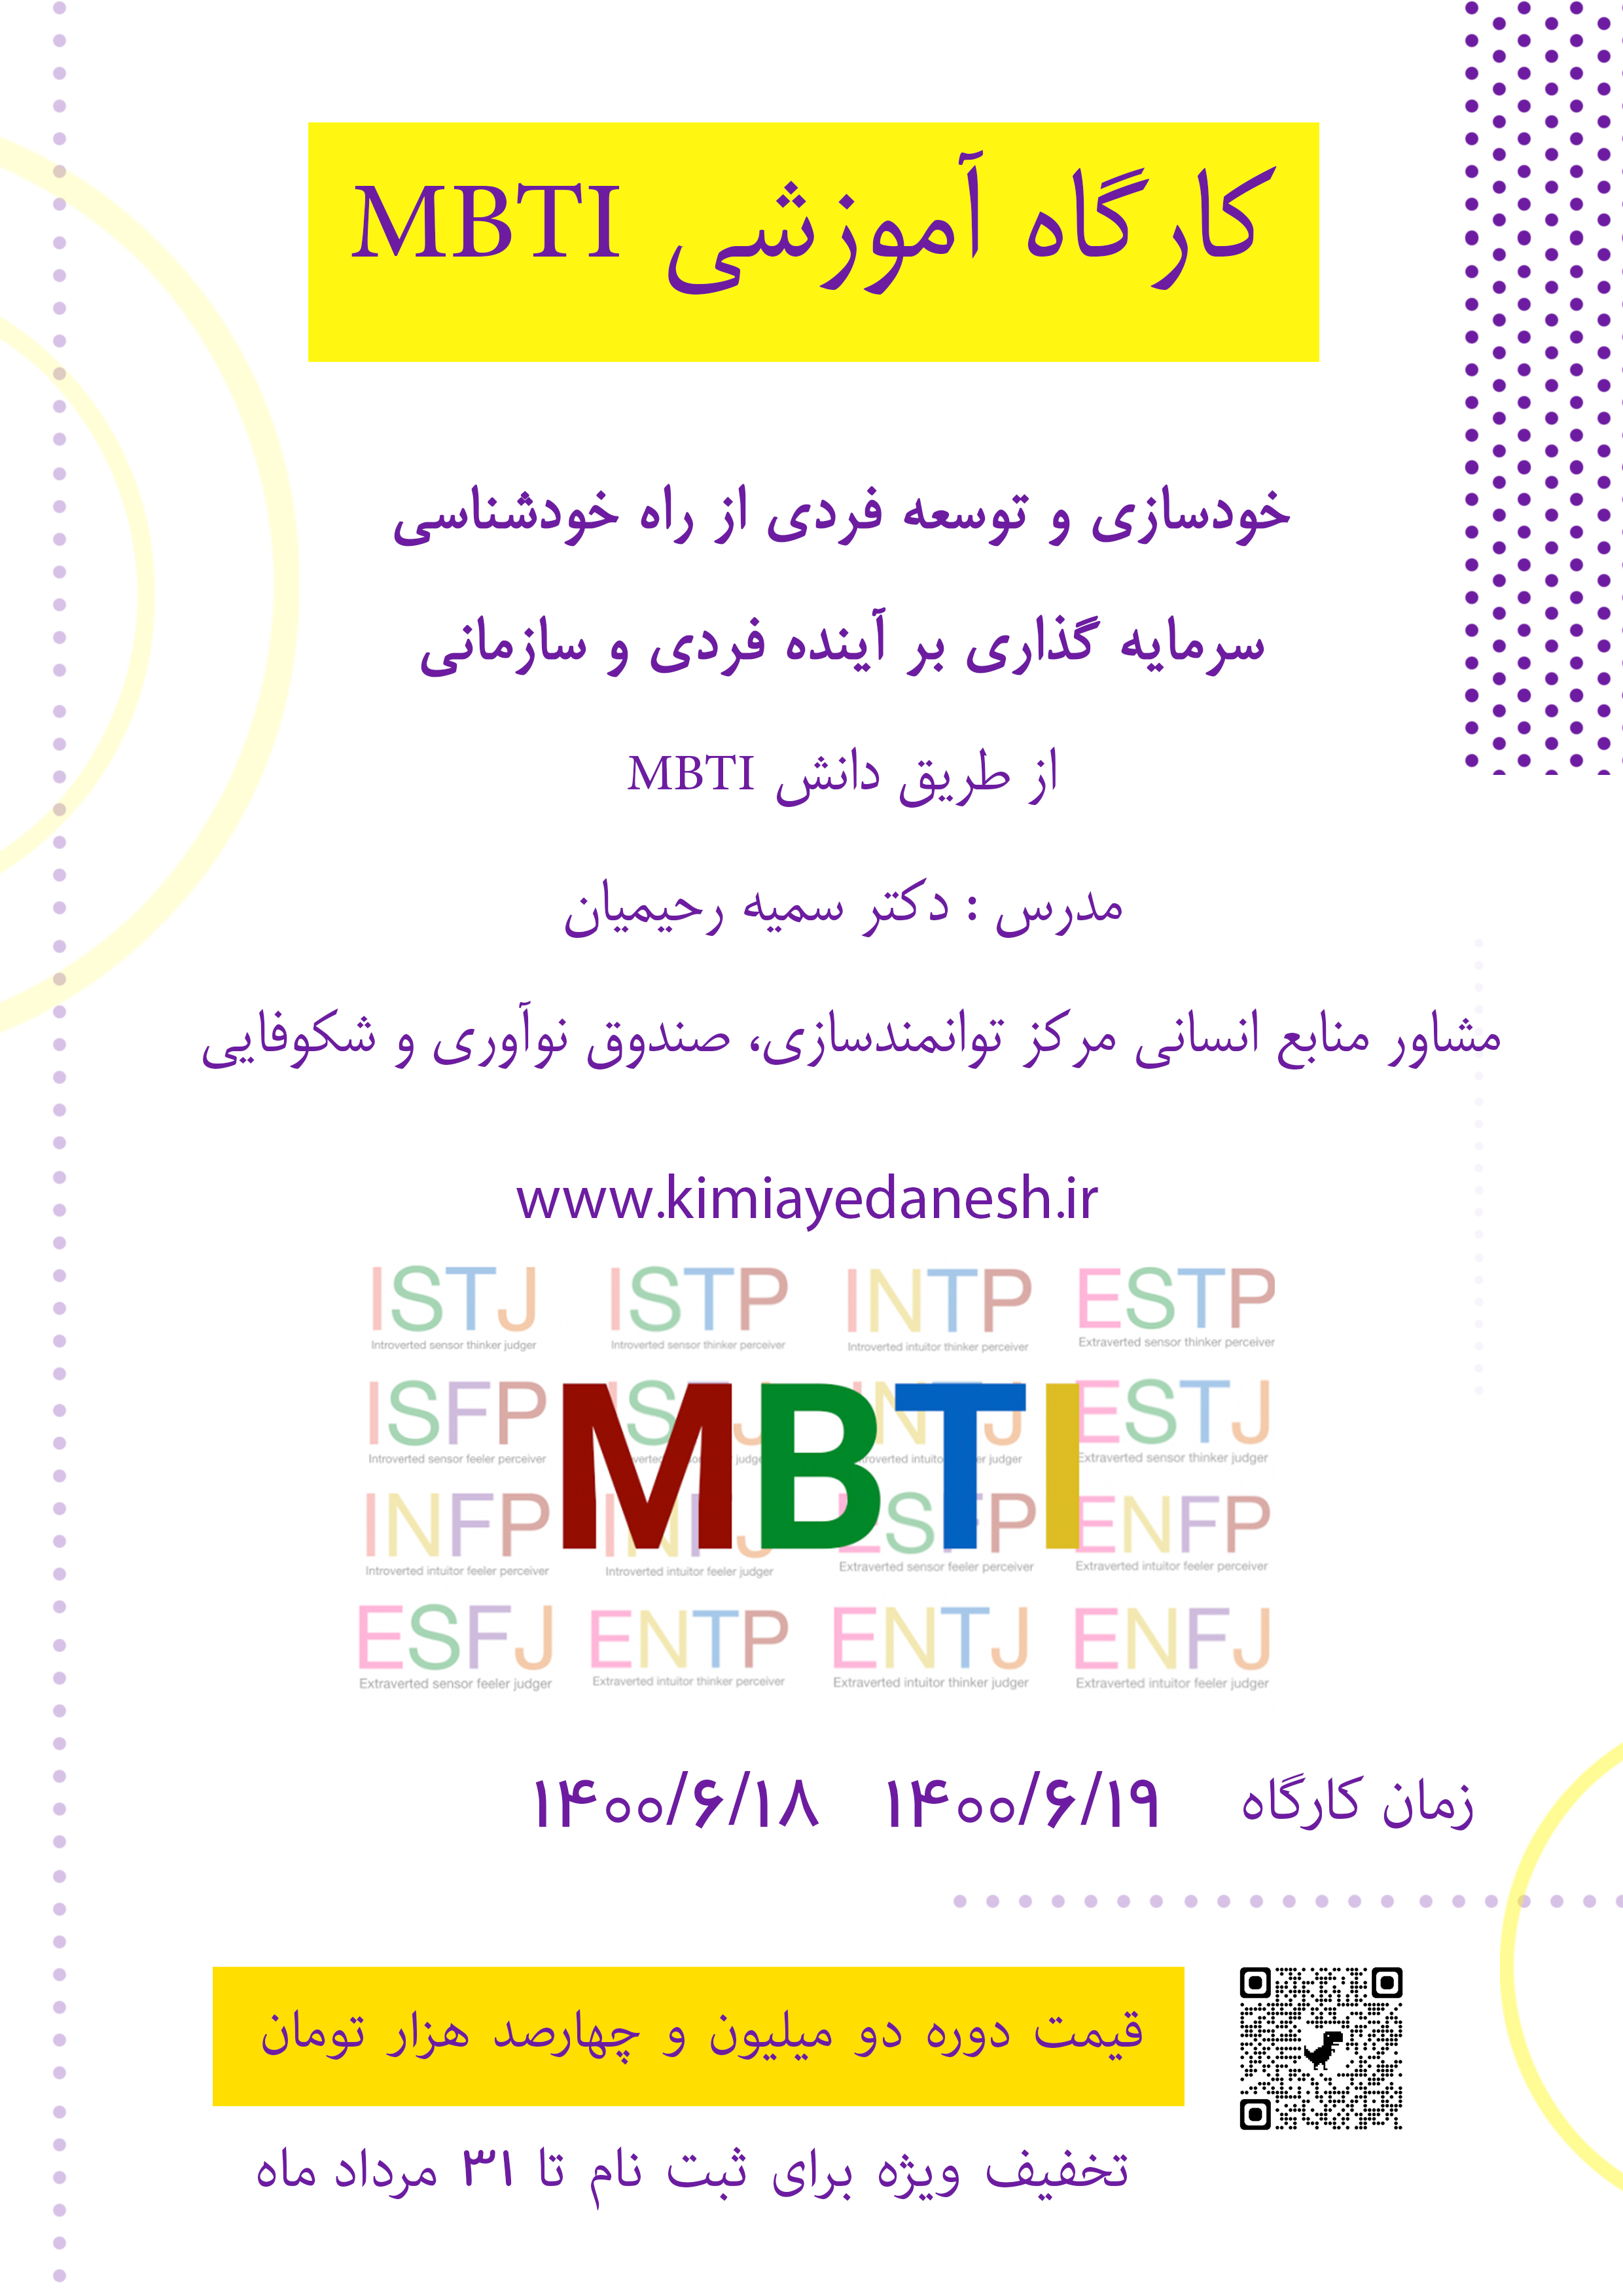 کارگاه آموزشی MBTI